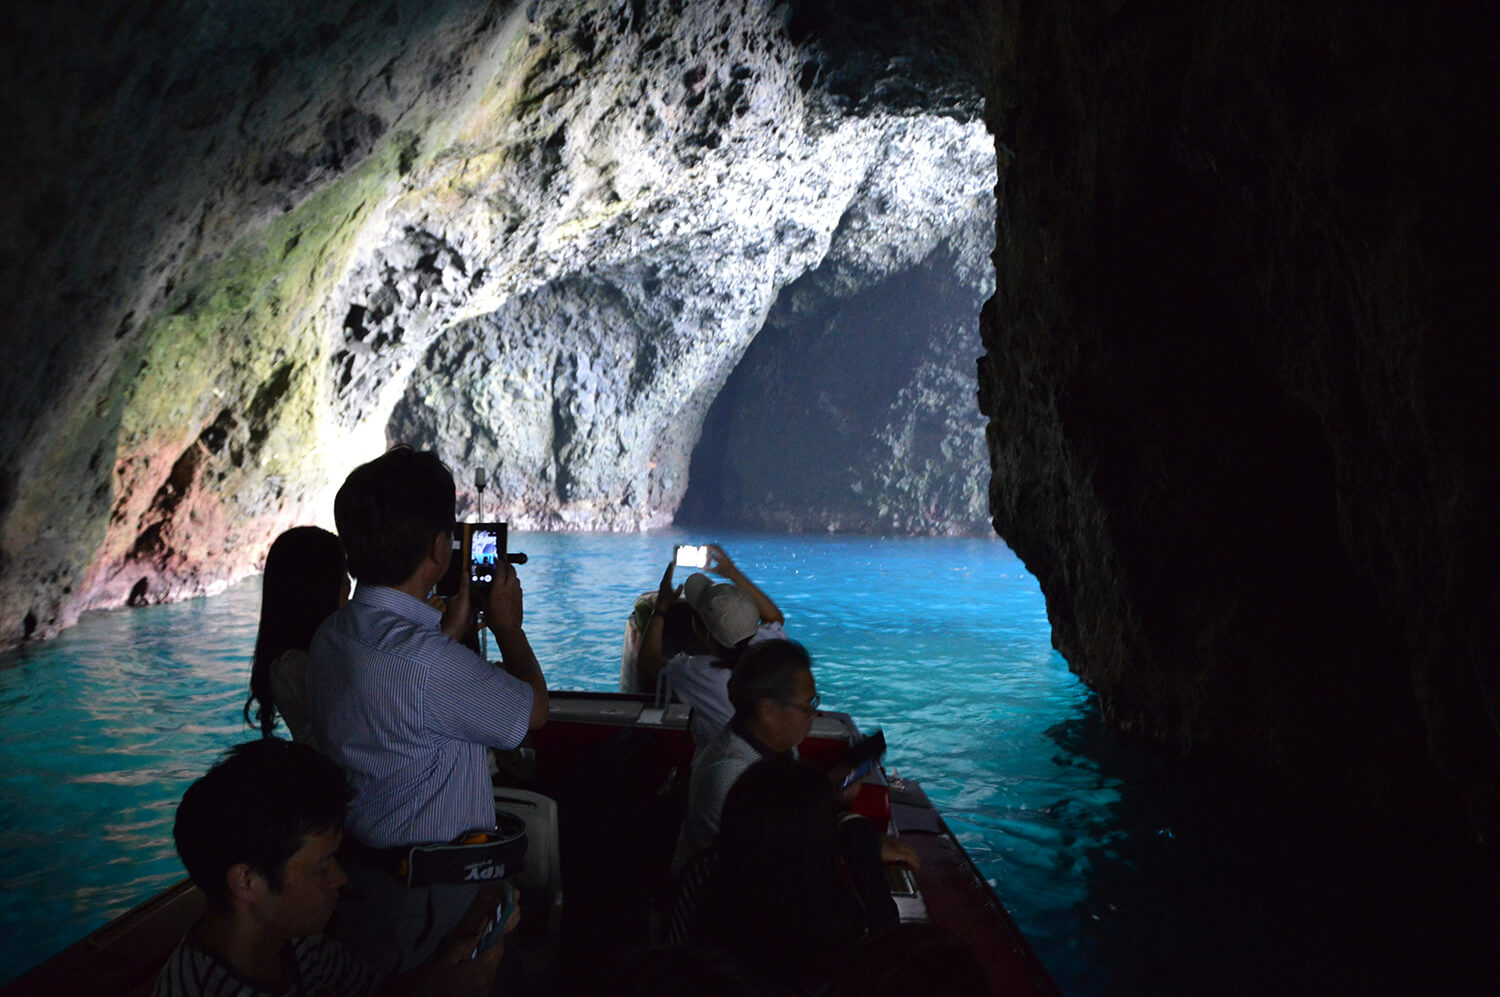 青の洞窟は、地形や海の透明度などさまざまな自然条件が重なって生まれる奇跡の風景